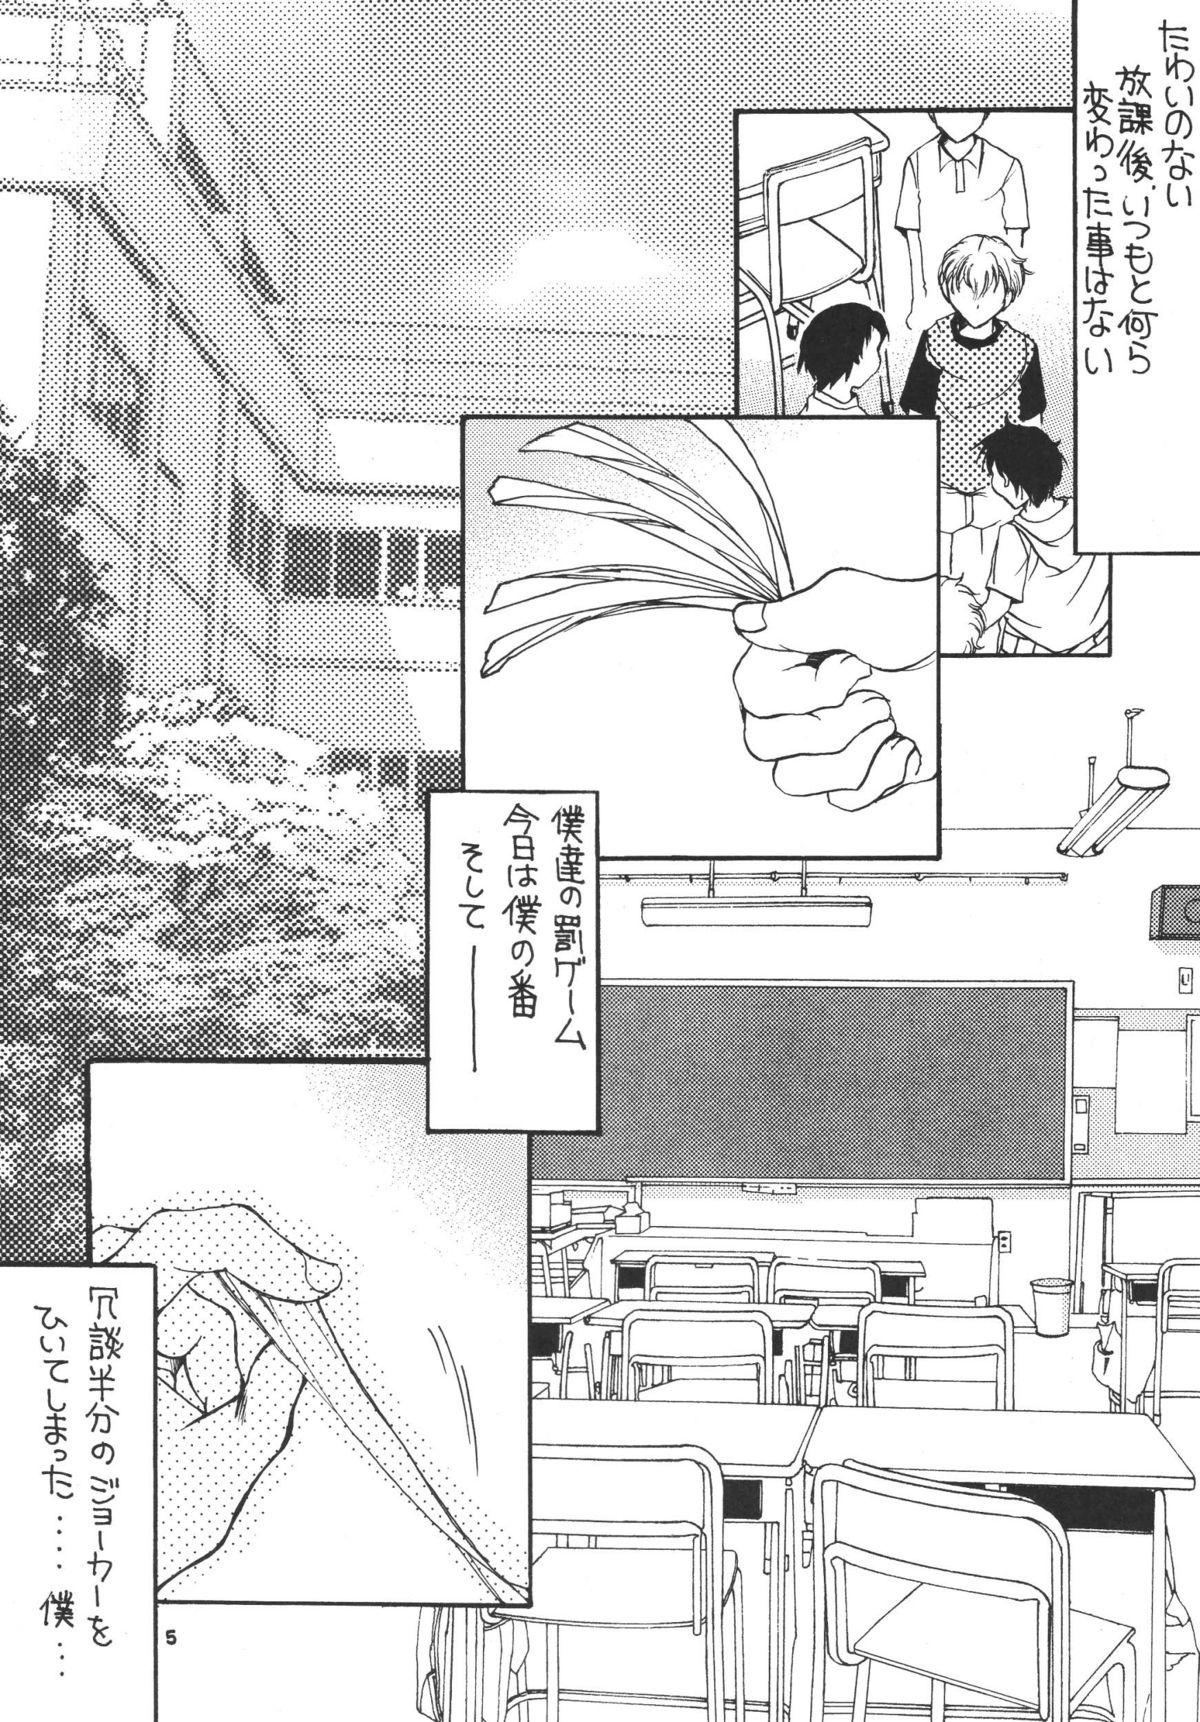 Relax Tsukutsuku Haha 3 Tan - Page 5